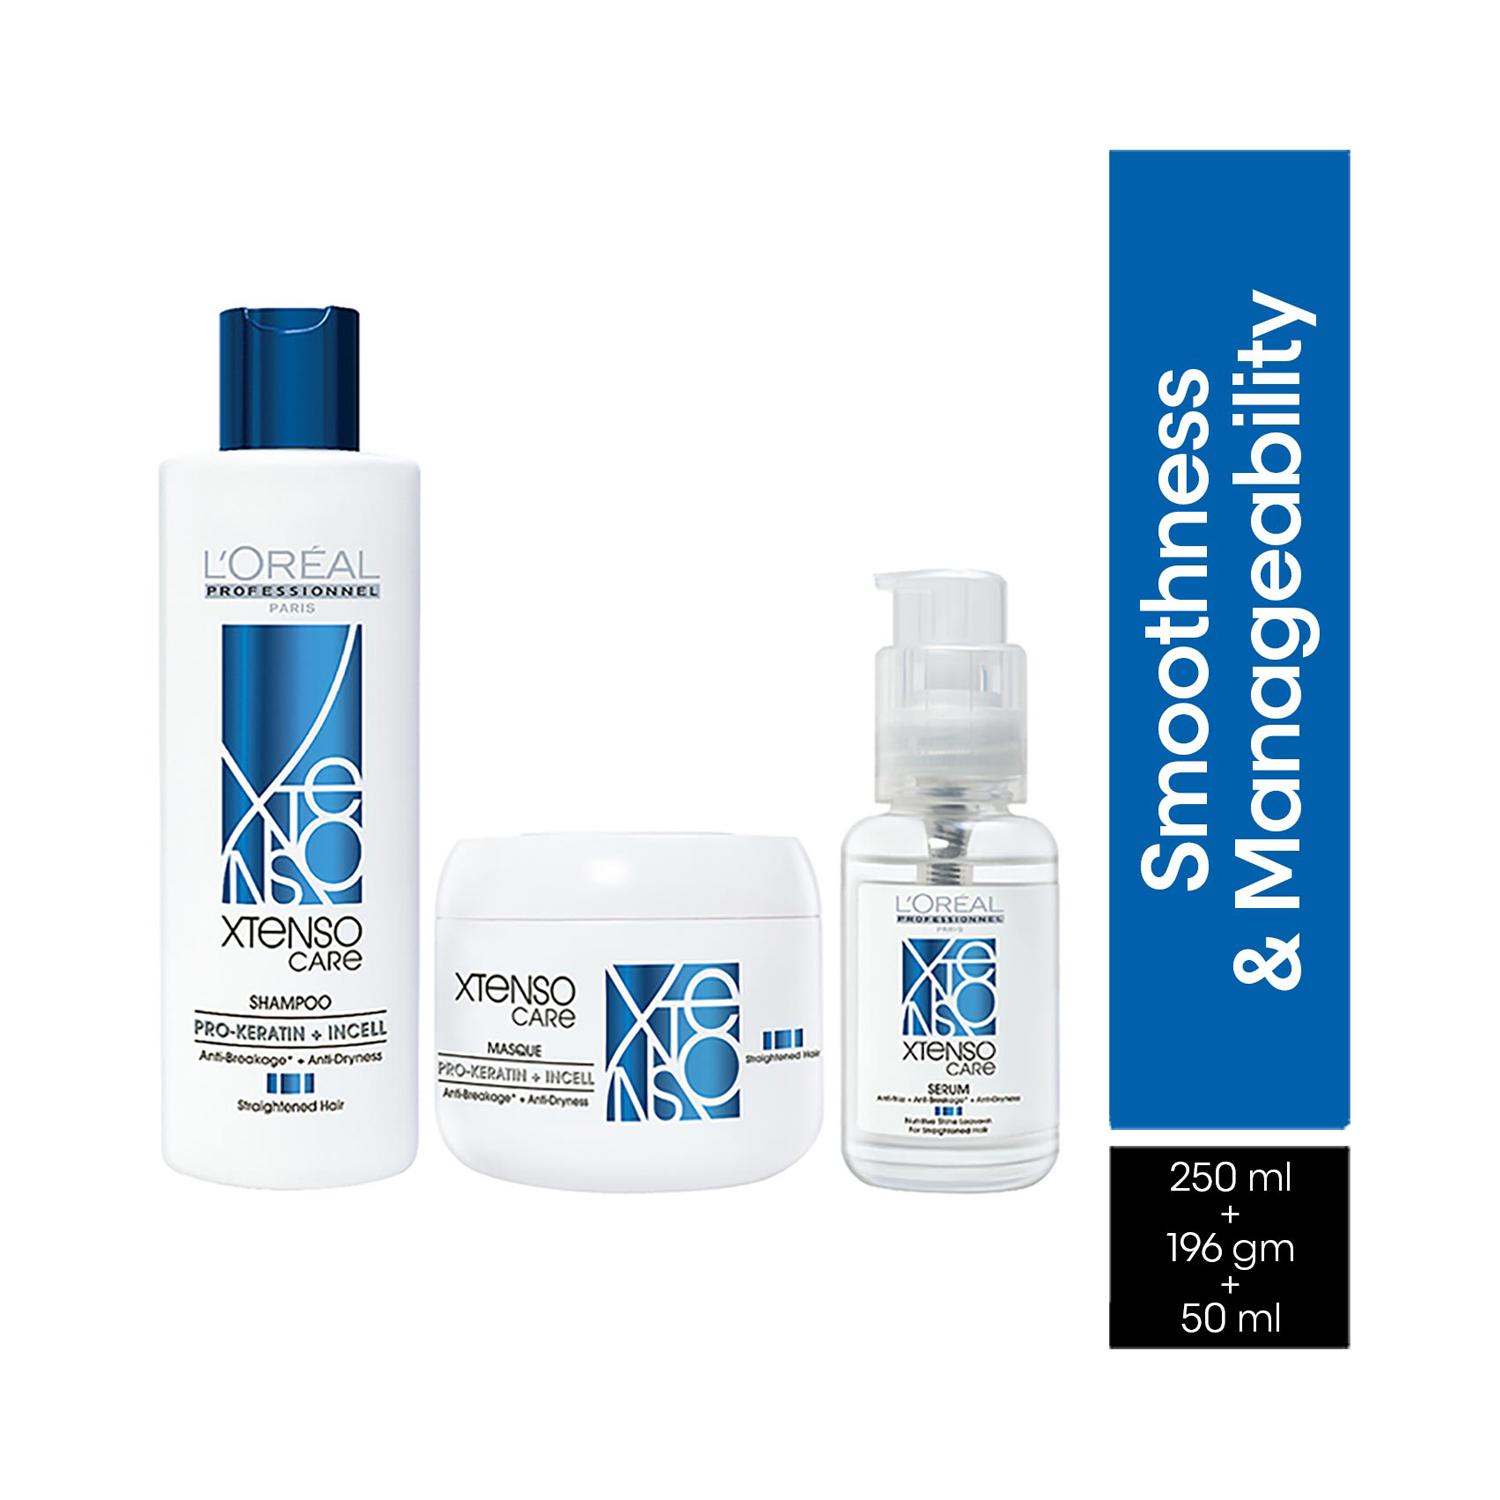 L'Oreal Professionnel | L'Oreal Professionnel Pro-Keratine + Incell Shampoo (250ml), Mask (196g) & Serum (50ml) Combo